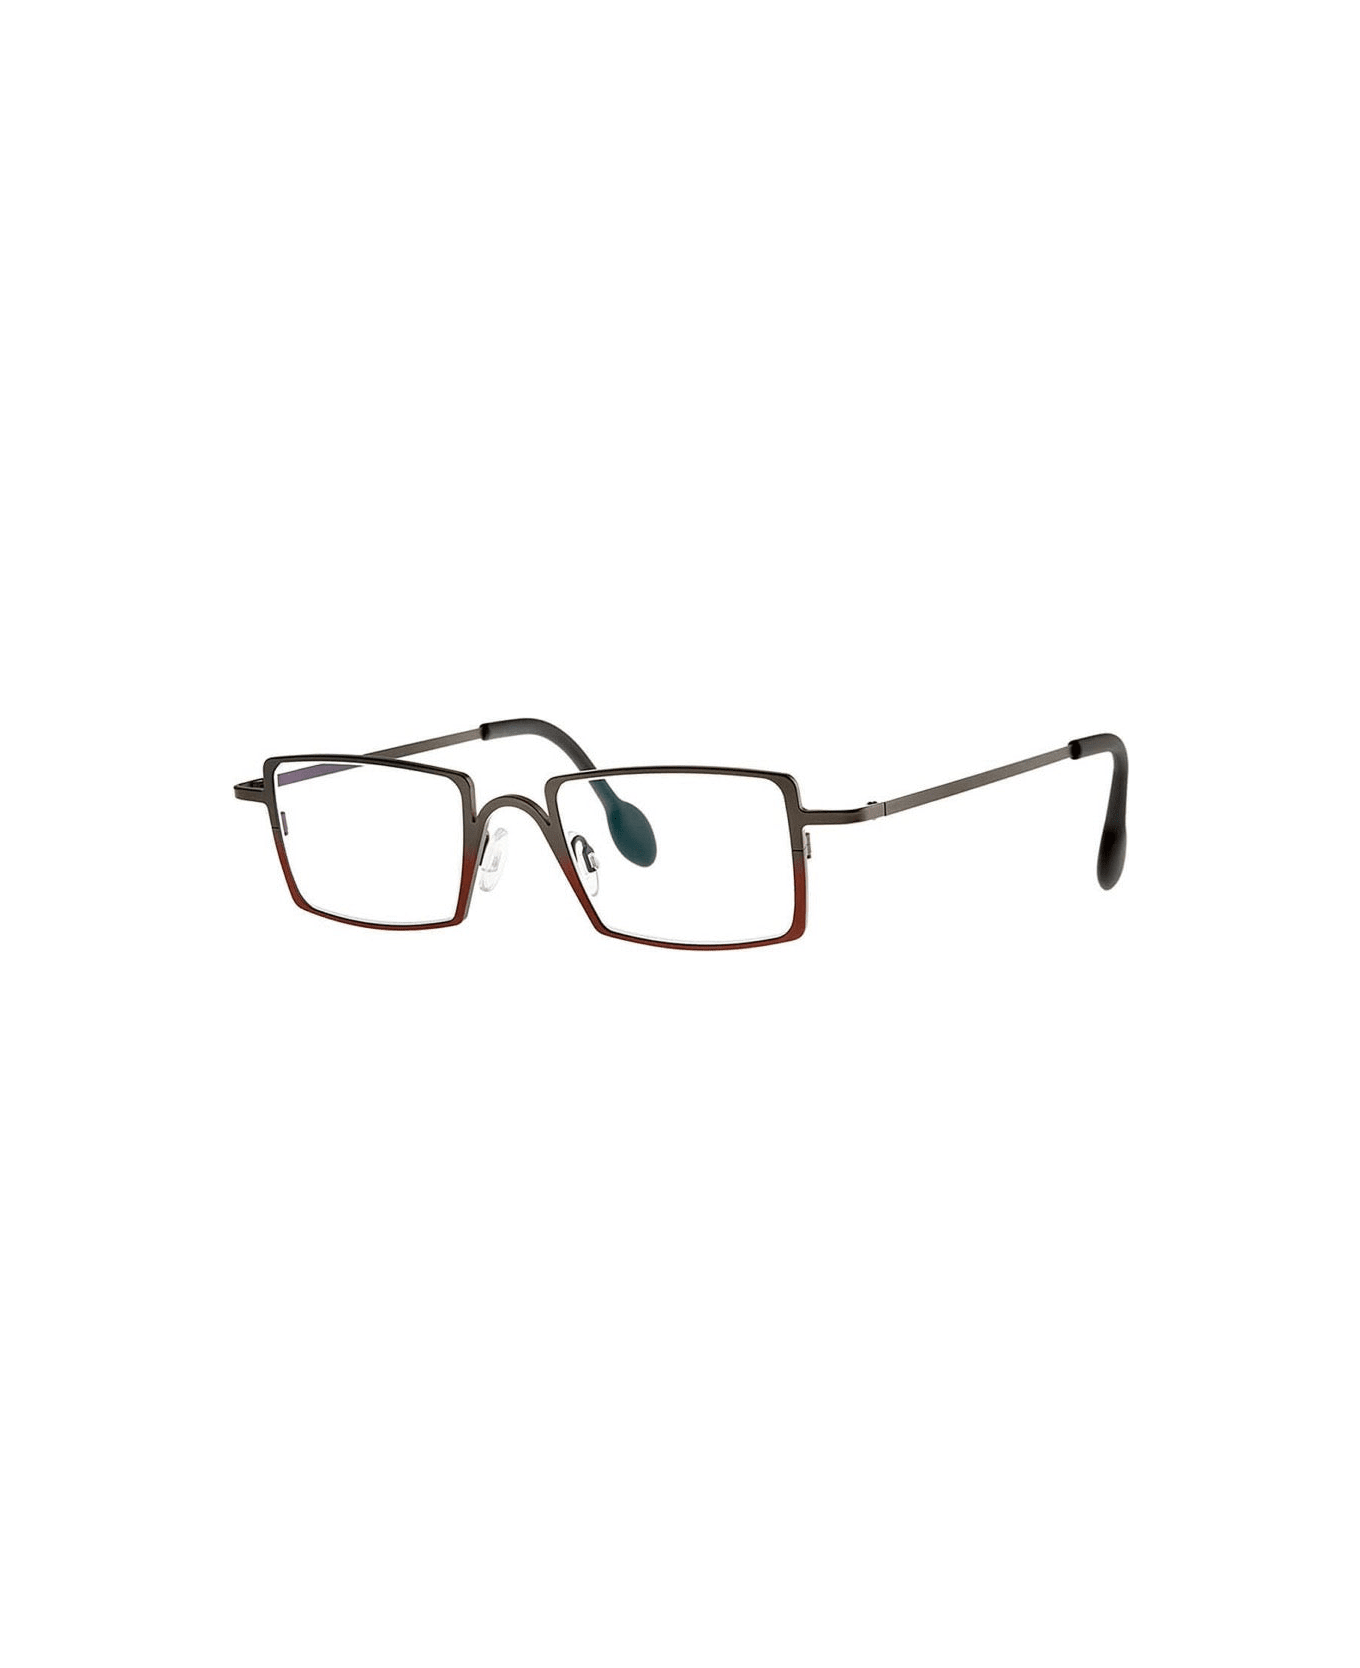 Theo Eyewear Bodoni 364 Glasses - brown アイウェア